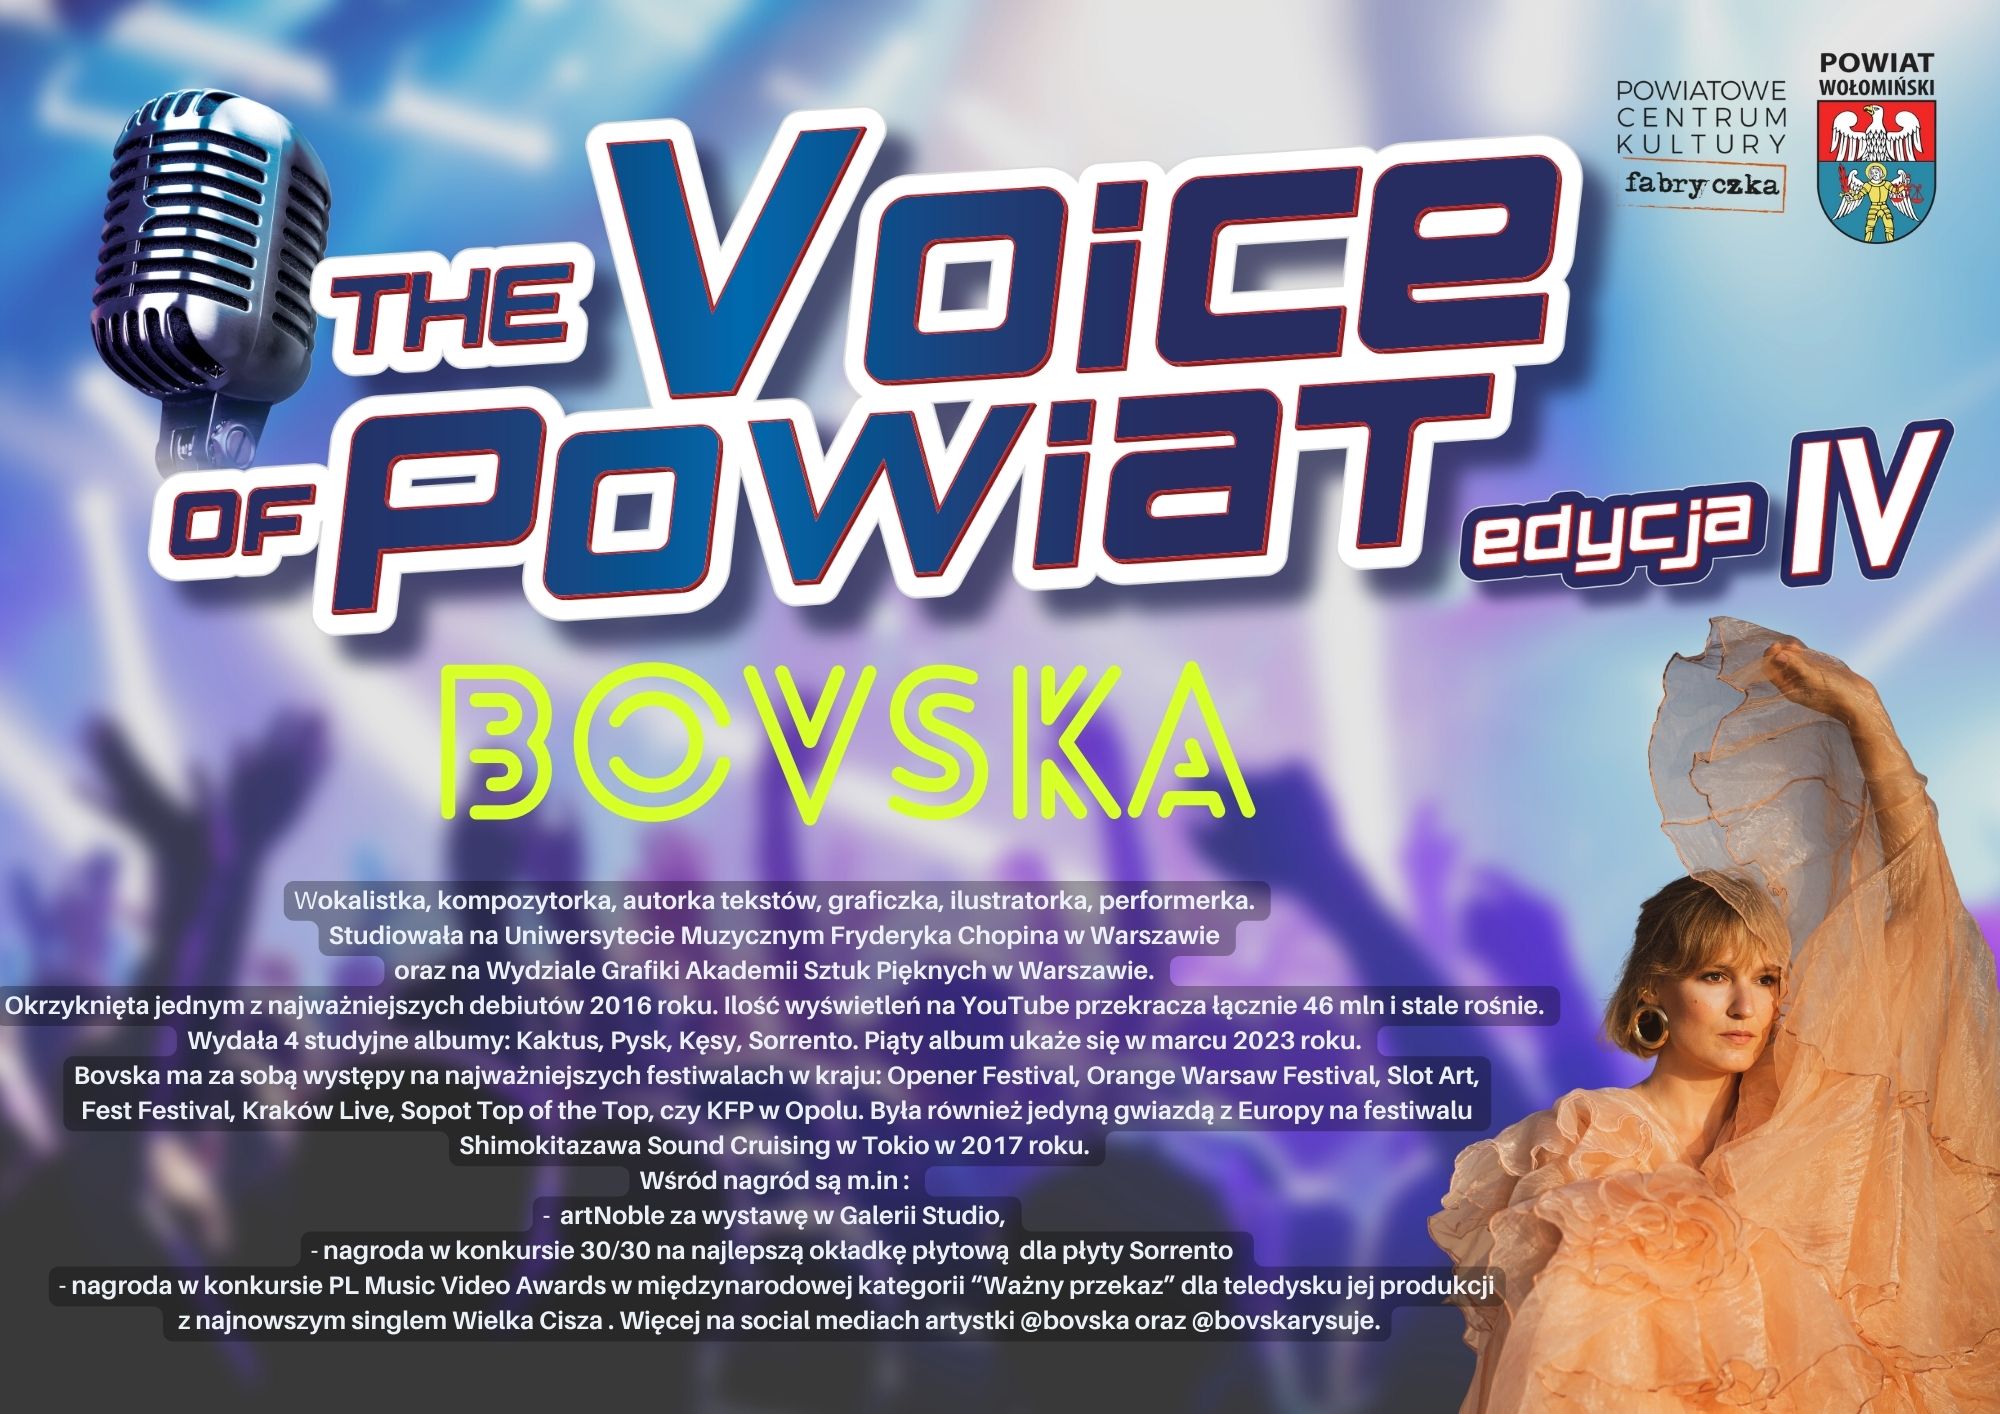 Zbliża się IV edycja The Voice of Powiat!